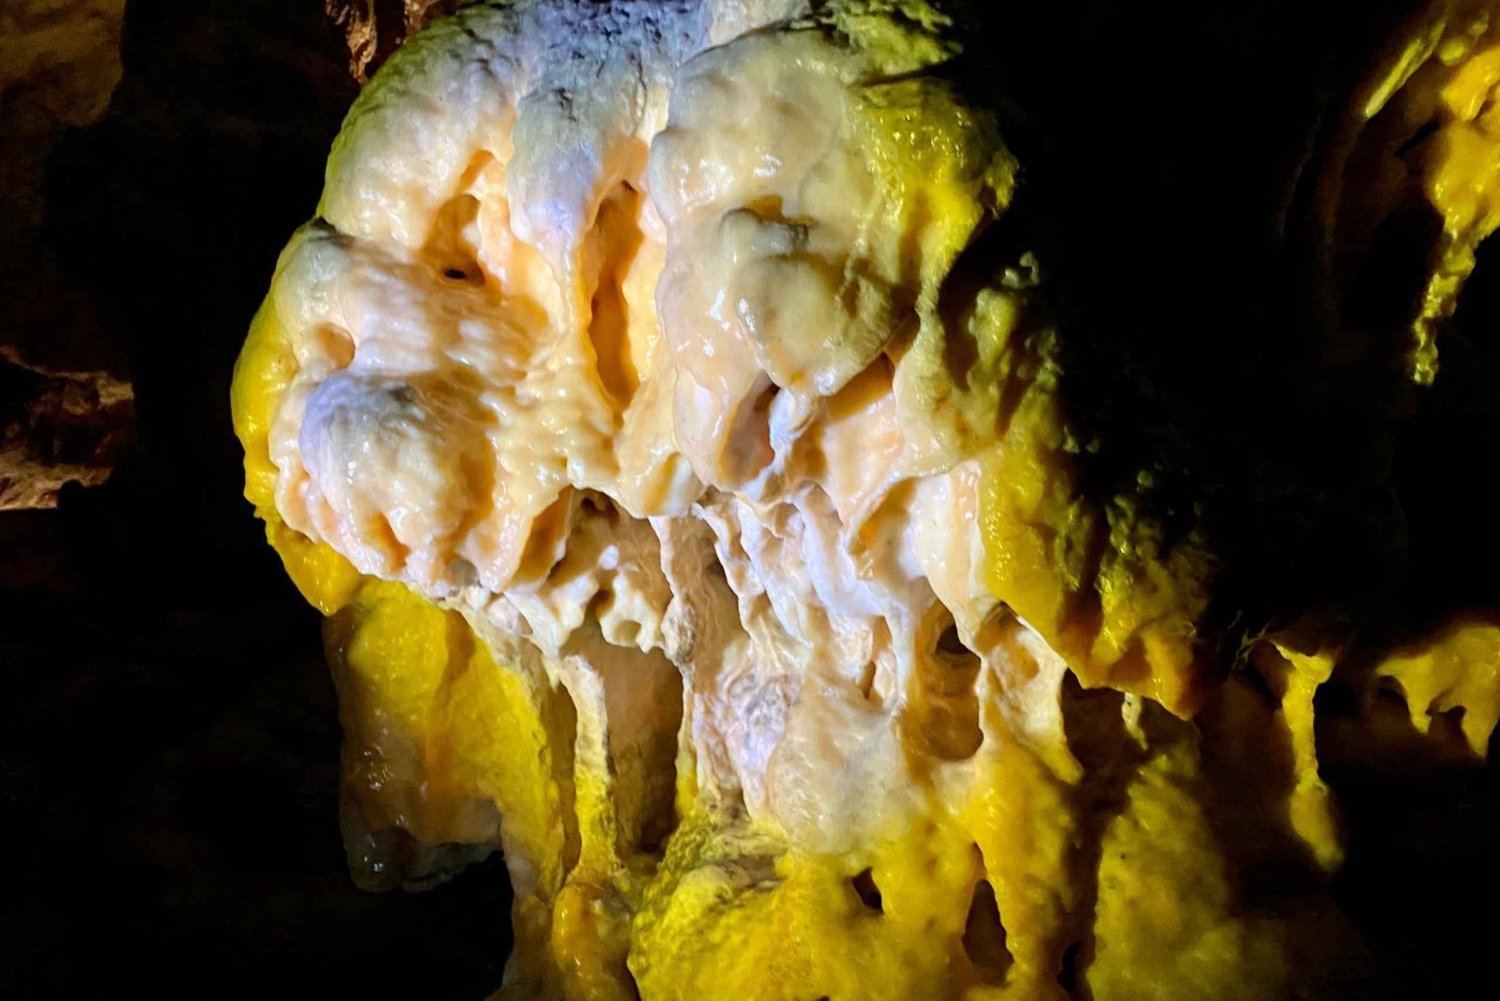 Von Ljubljana aus: Tagesausflug zur Höhle von Postojna